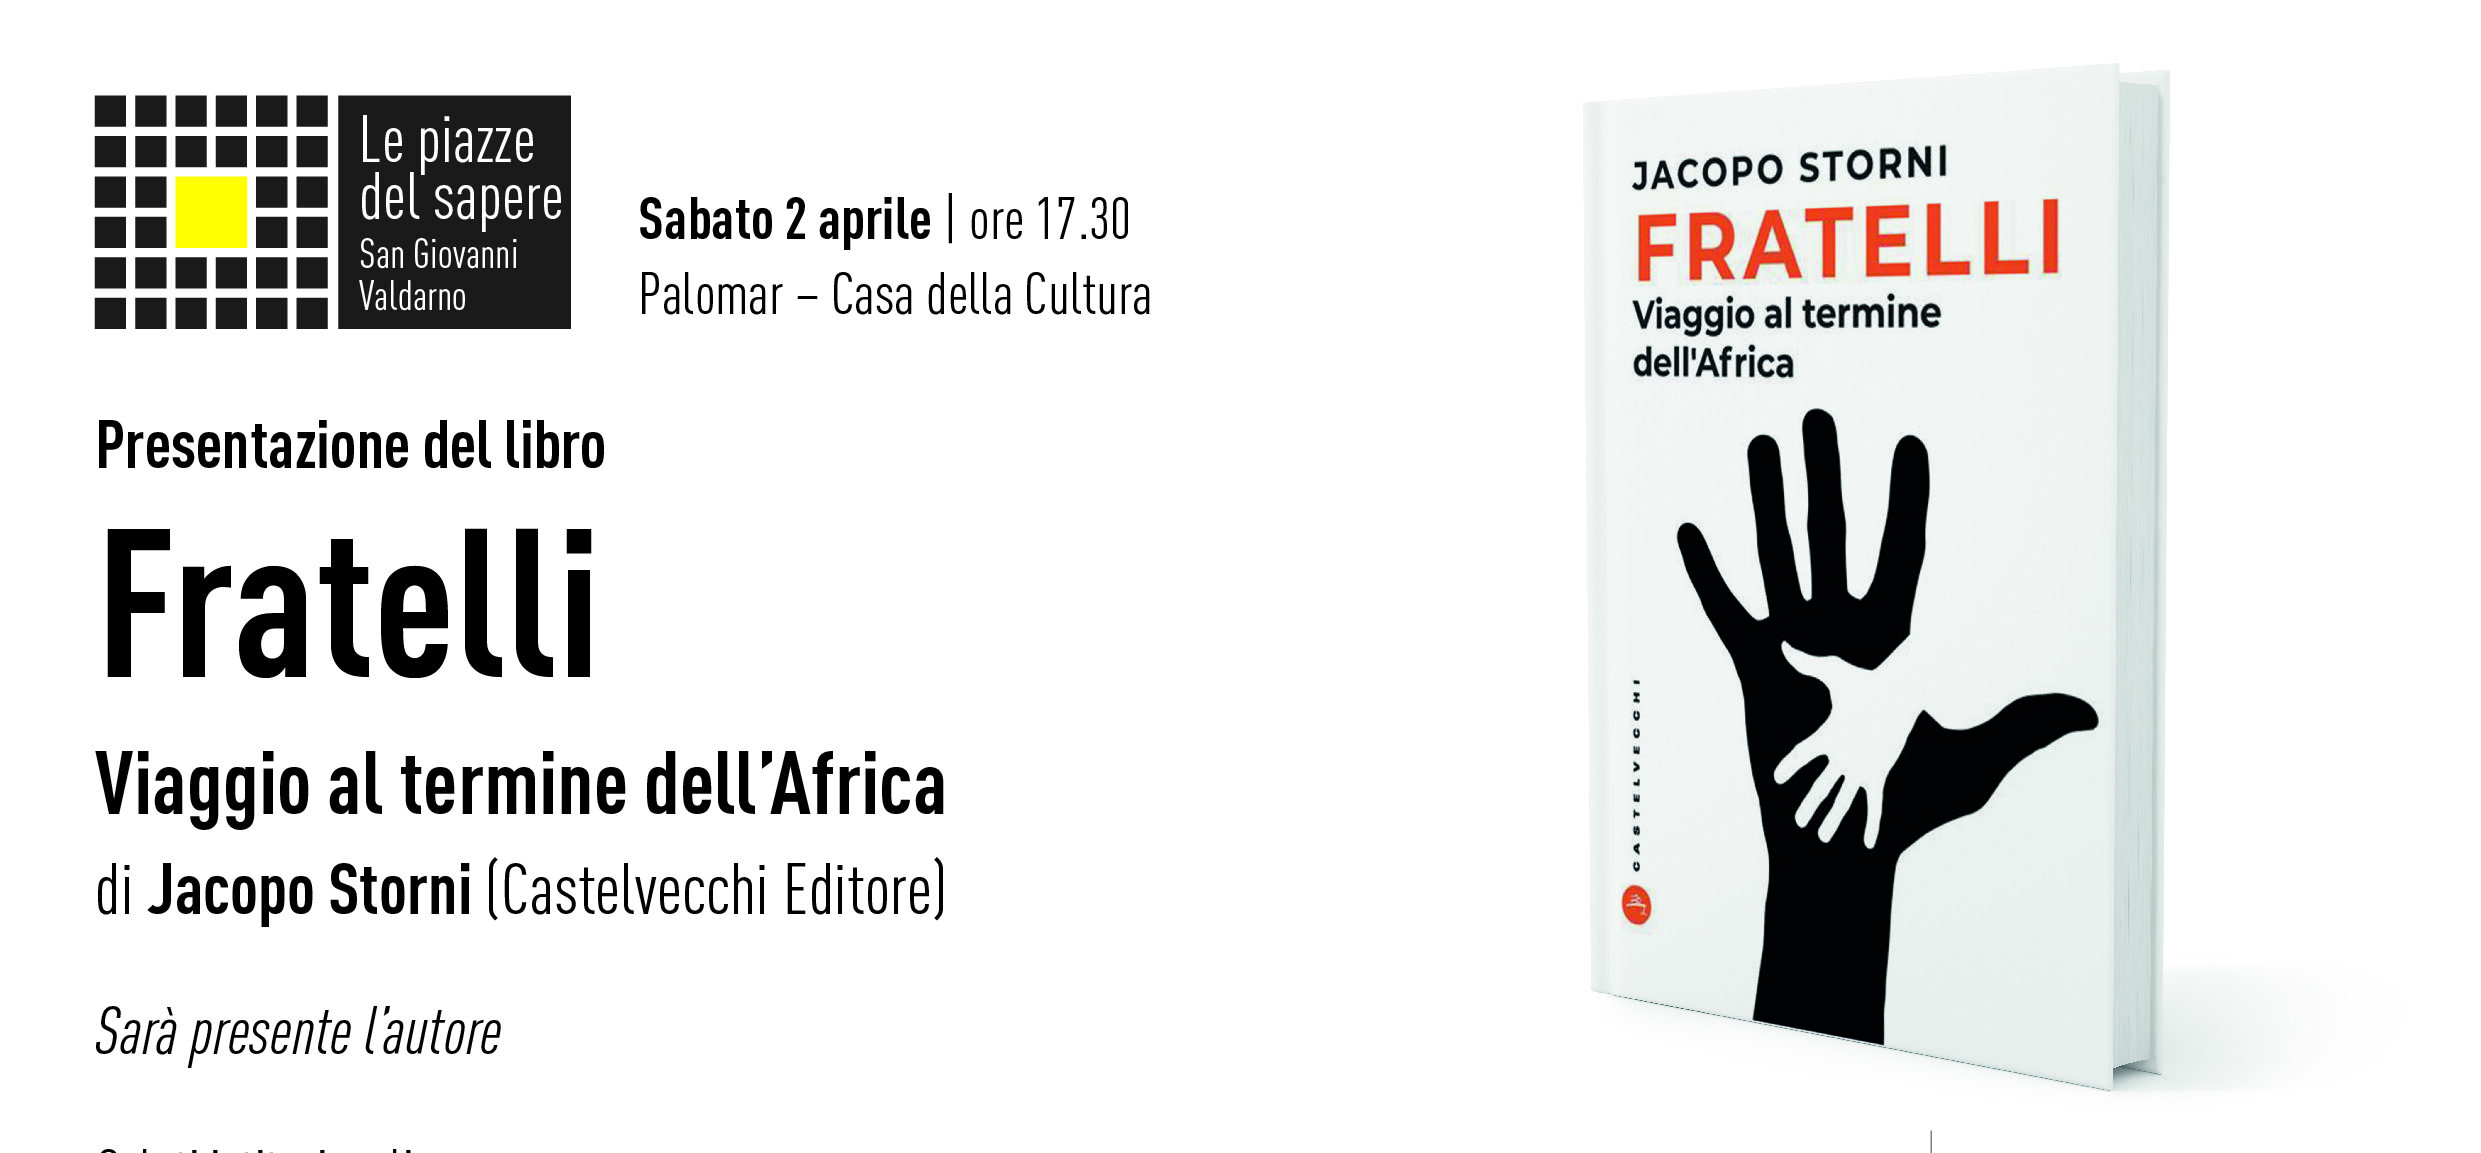 Jacopo Storni ospite a Palomar con il suo libro “Fratelli: Viaggio al termine dell’Africa”